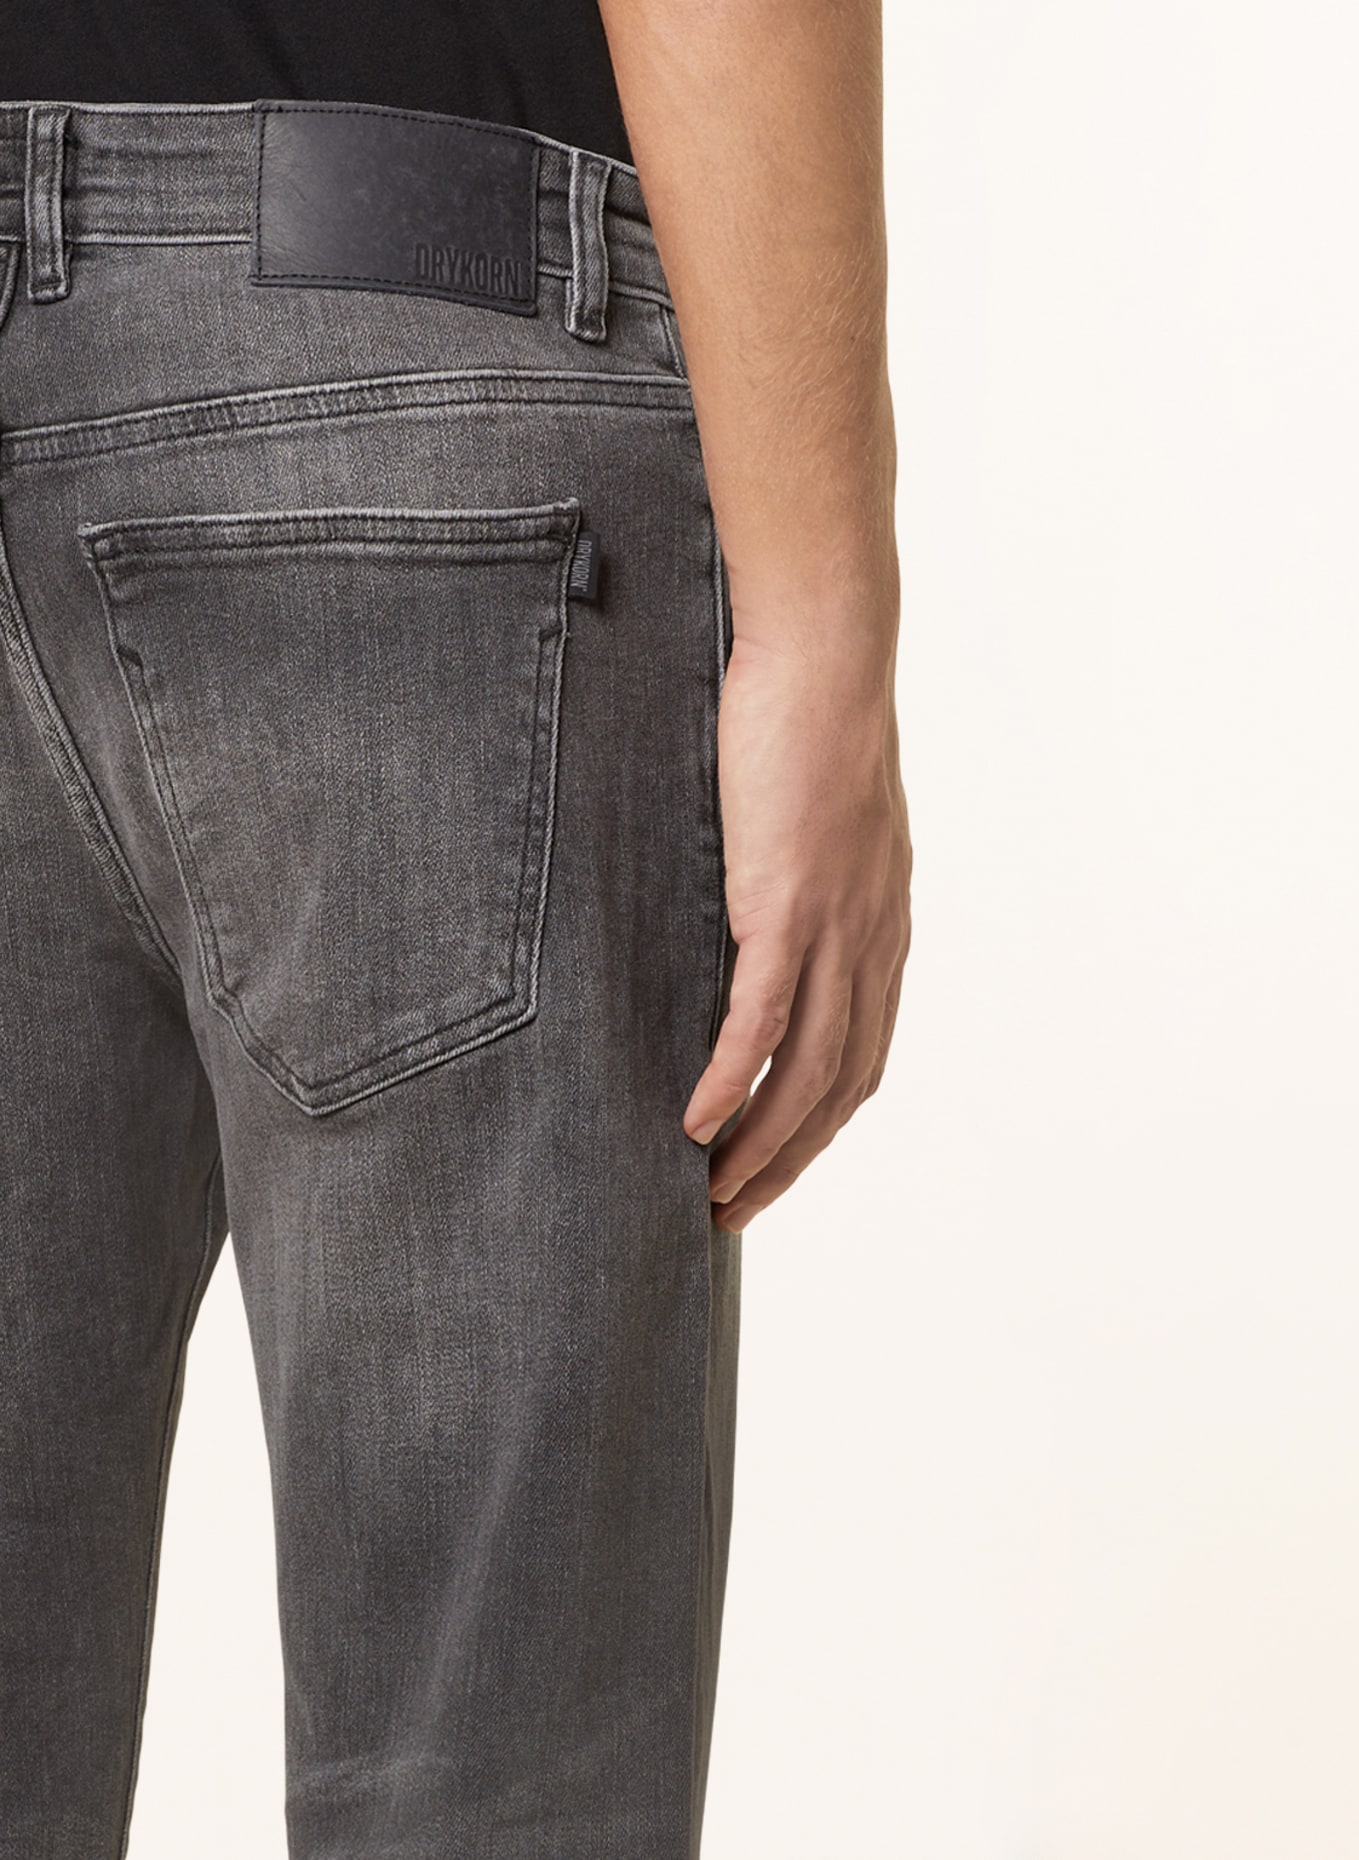 DRYKORN Jeans WEST Extra Slim Fit mit verkürzter Beinlänge, Farbe: 6400 GRAU (Bild 6)